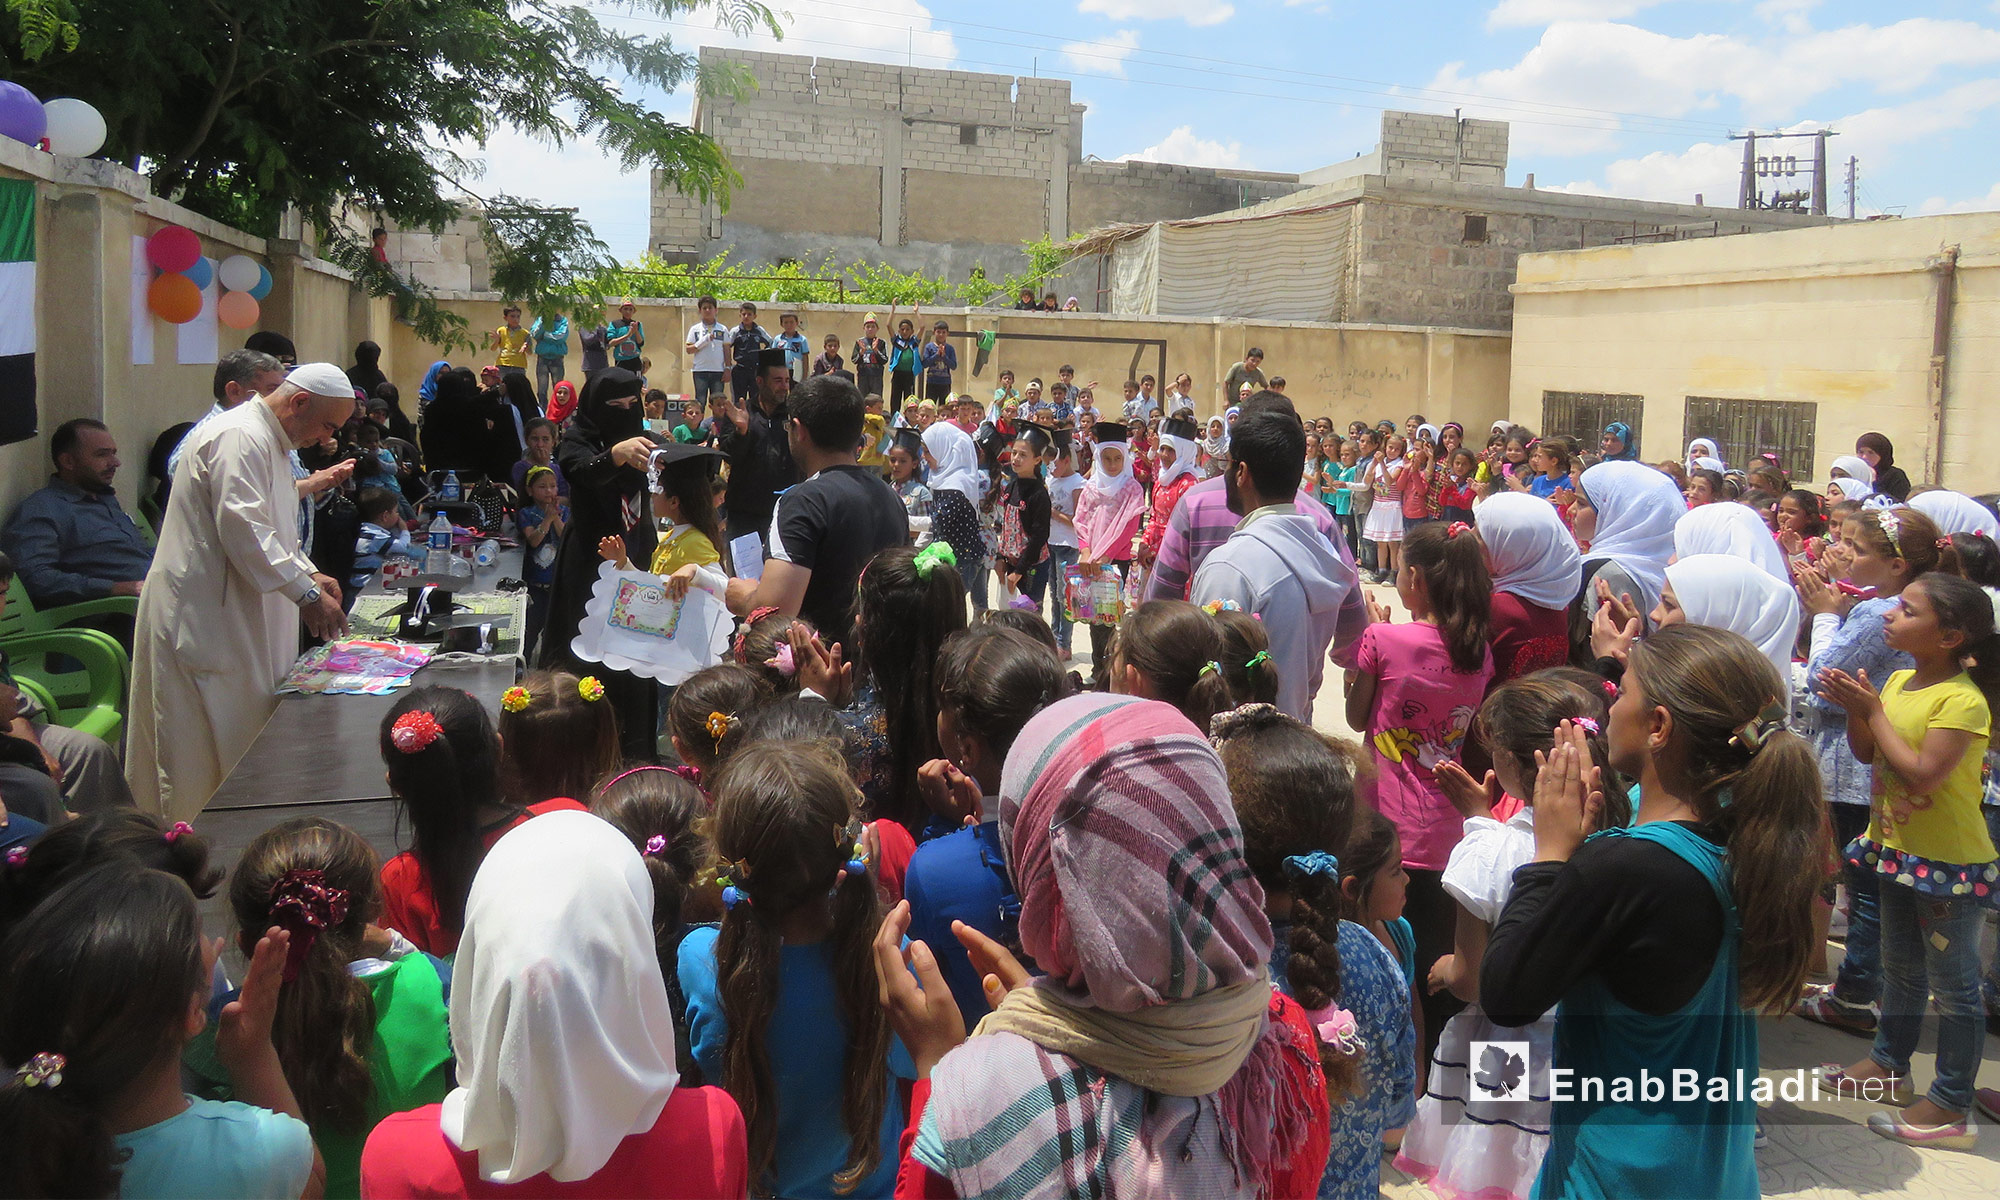 أطفال يٌشاركون في حفلٍ للمتفوقين  في صوران شمال حلب - 25 أيار 2017 (عنب بلدي)